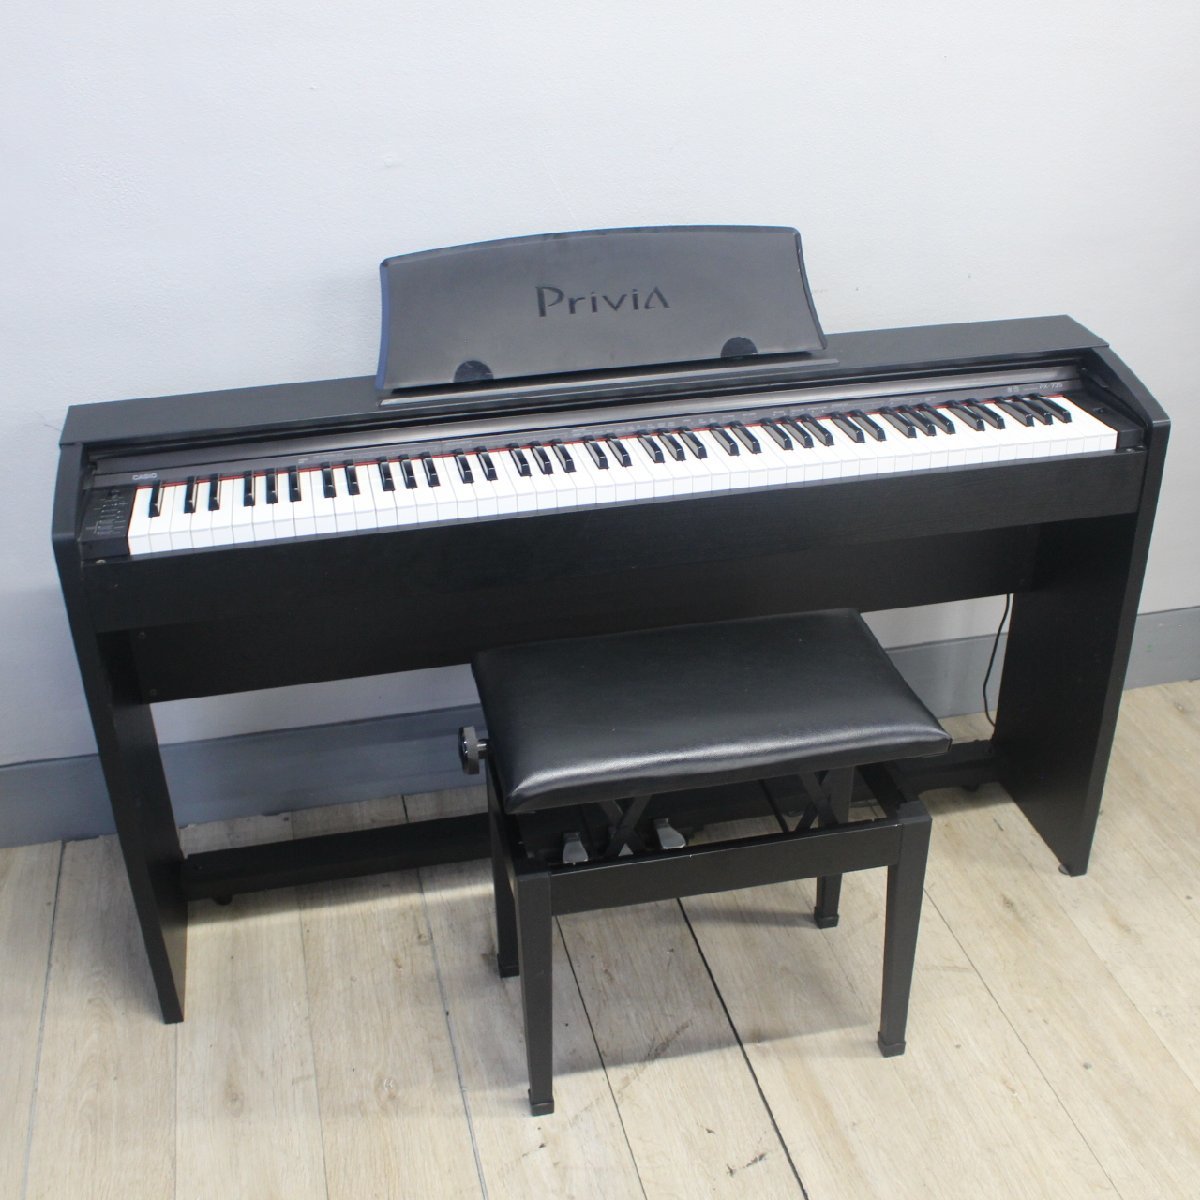 東京都三鷹市にて カシオ 電子ピアノ PX-735 2011年製 を出張買取させて頂きました。